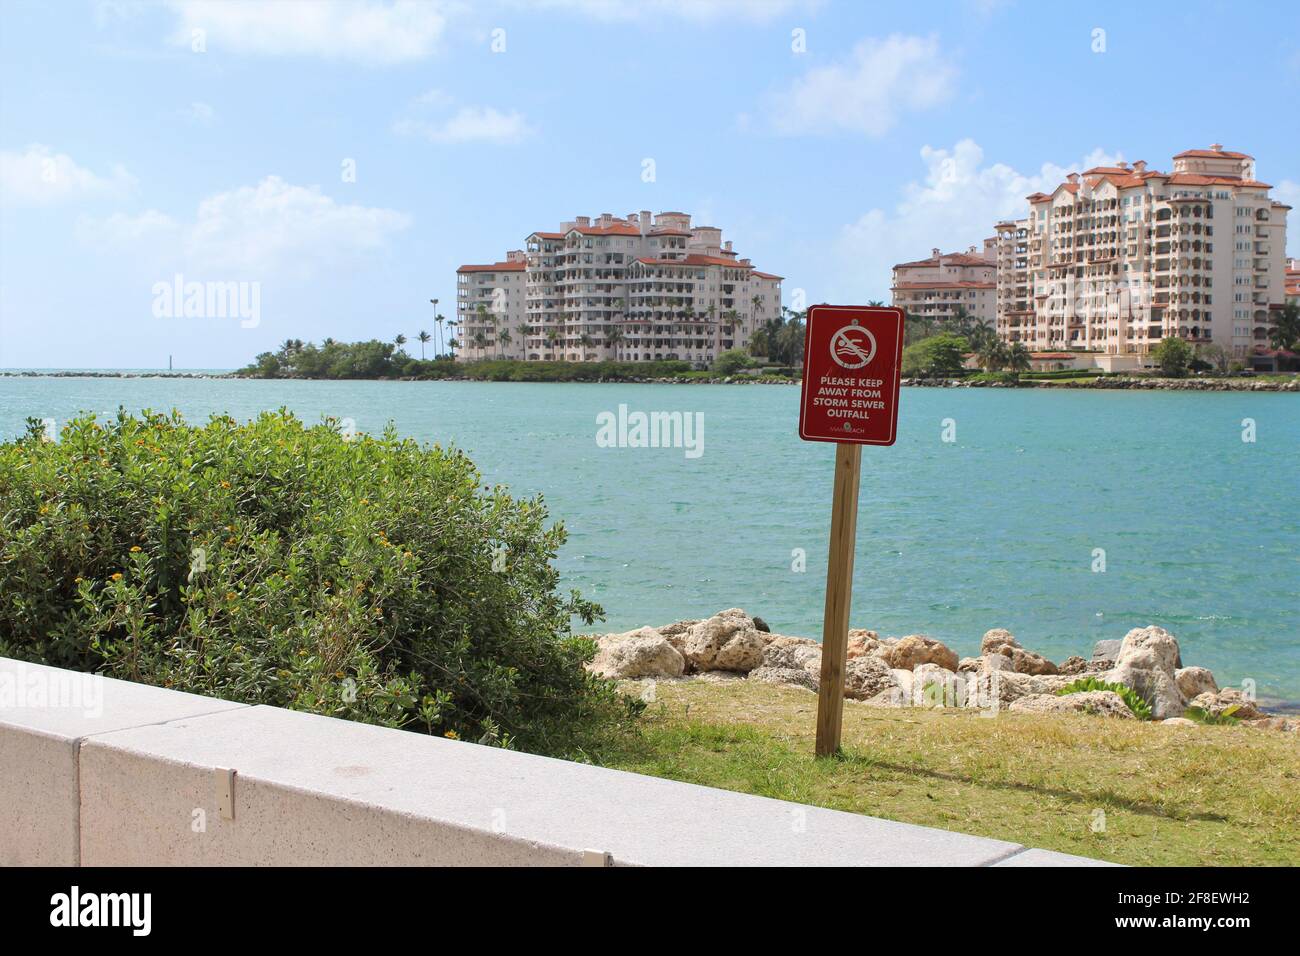 Schild, um sich von Sturmwasserkanälen in South Pointe fernzuhalten Strand in Miami Beach Florida mit einer Hintergrundansicht von Palazzo Del Sol Wohnanlagen in Fisher Island Stockfoto